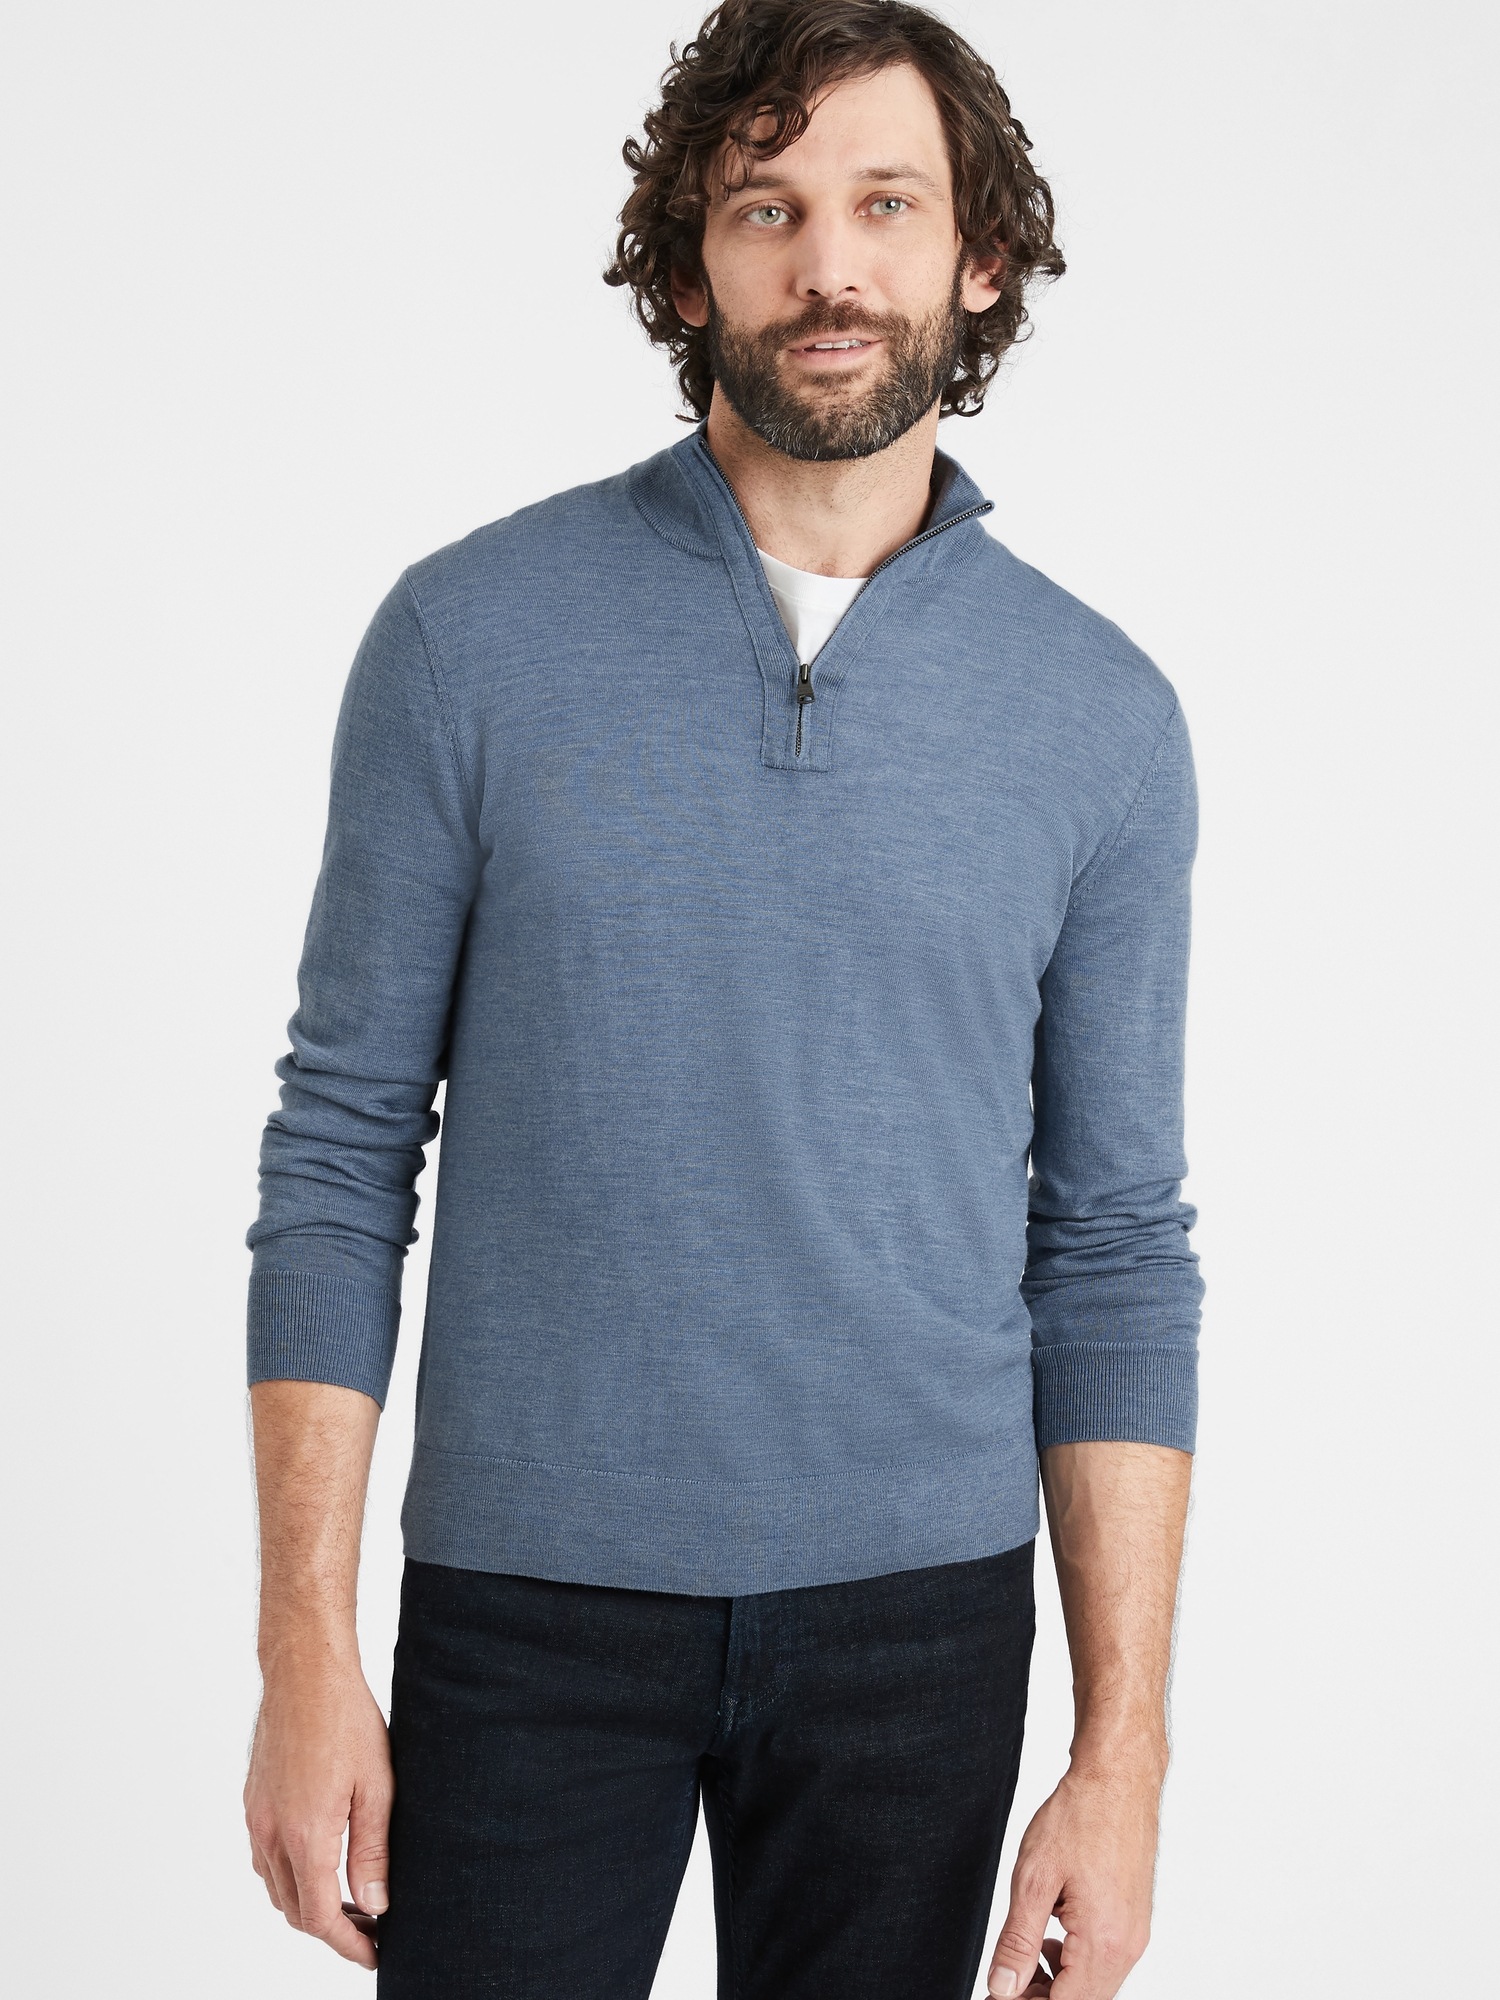 Merino Half-Zip Sweater in Responsible Wool